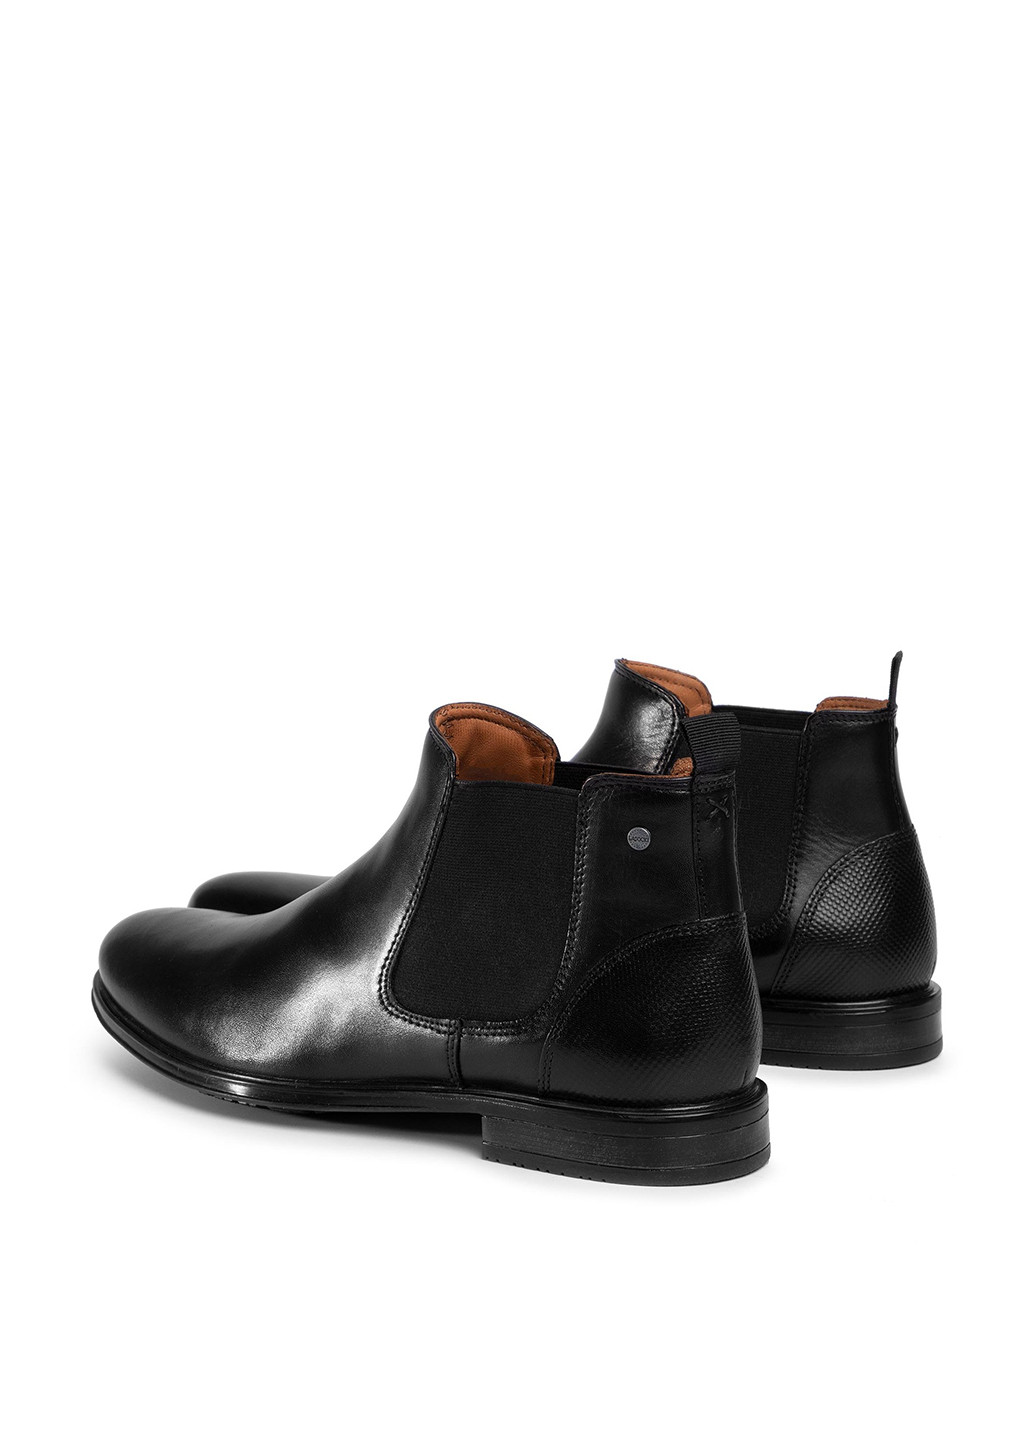 Черные осенние черевики lasocki for men mb-dylan-01 челси Lasocki for men